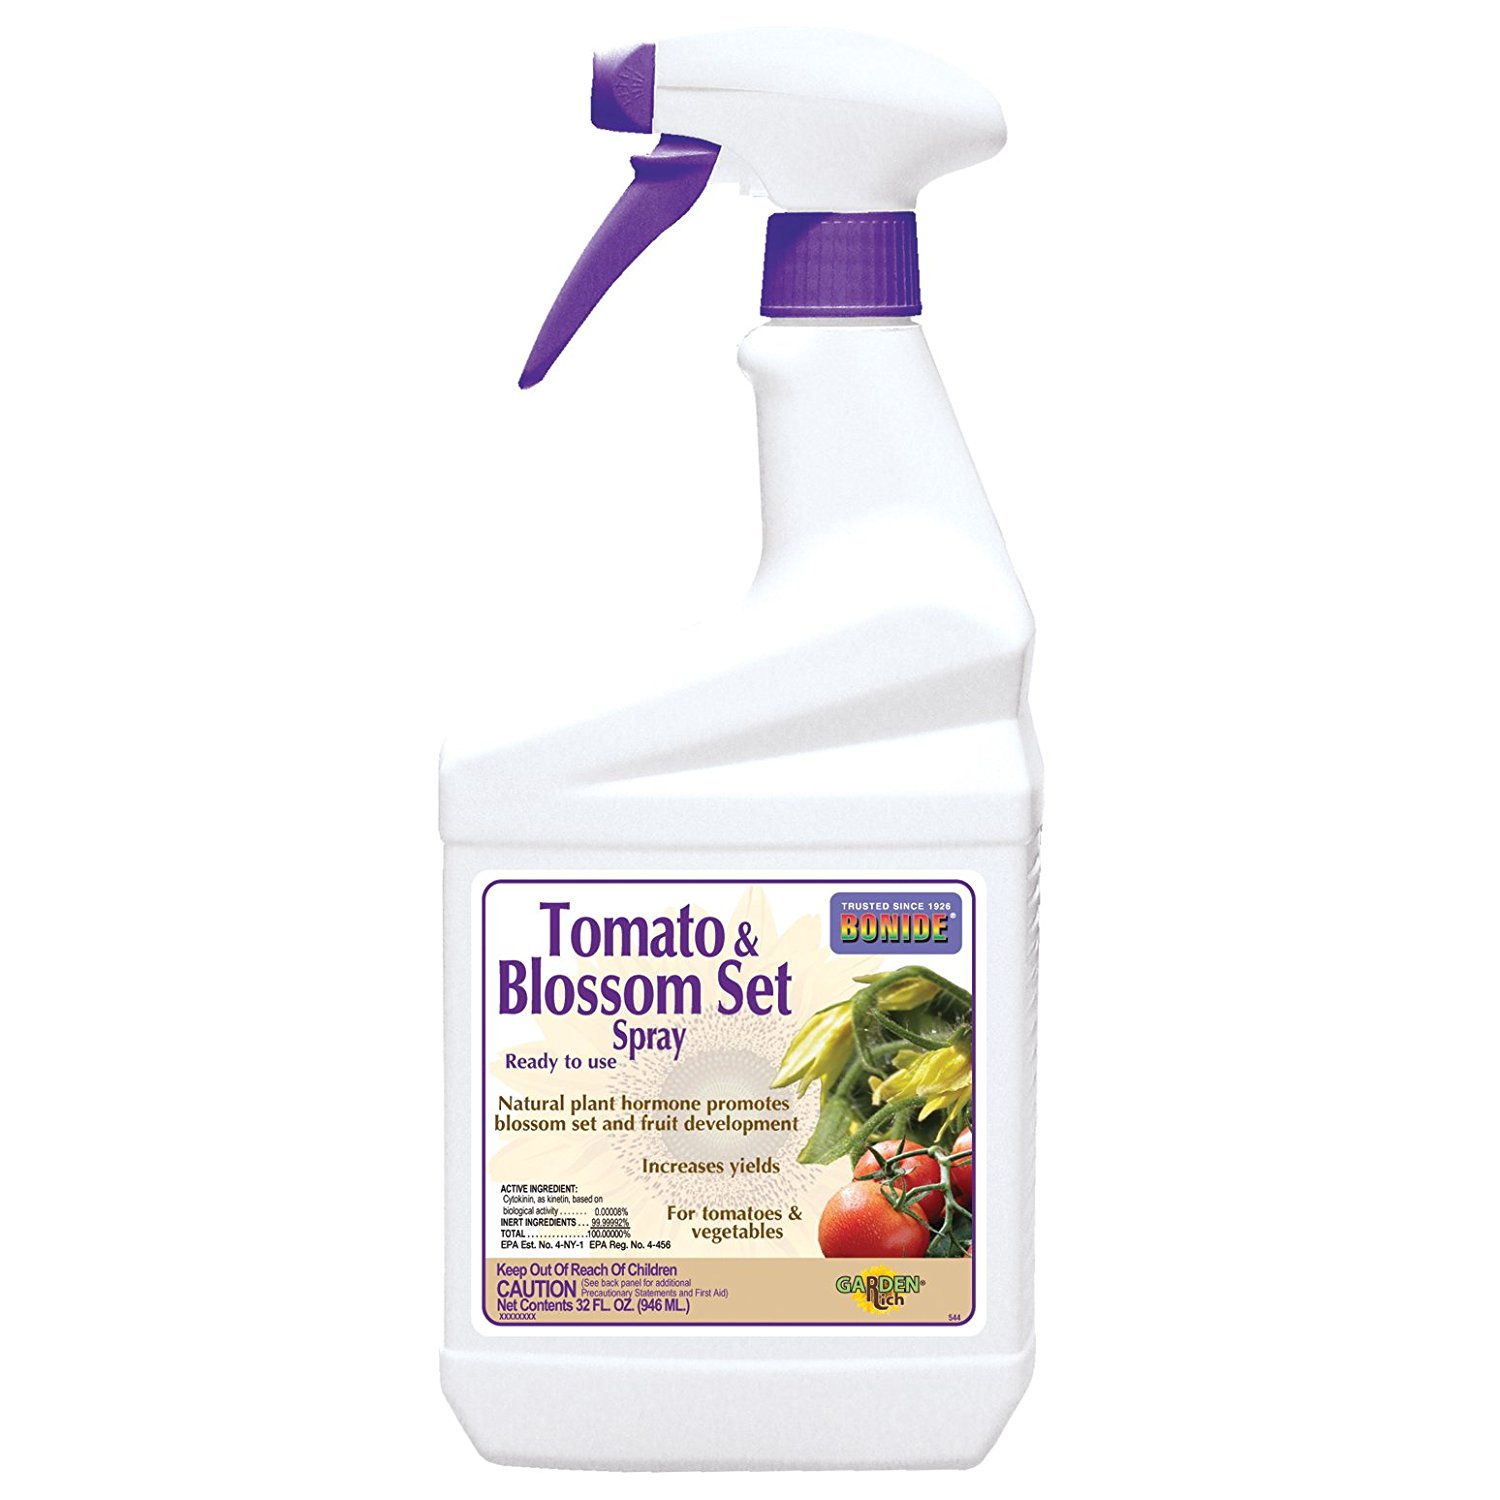 Tomato Blossom Set Spray with Tomato Dirt #VegetableGardening